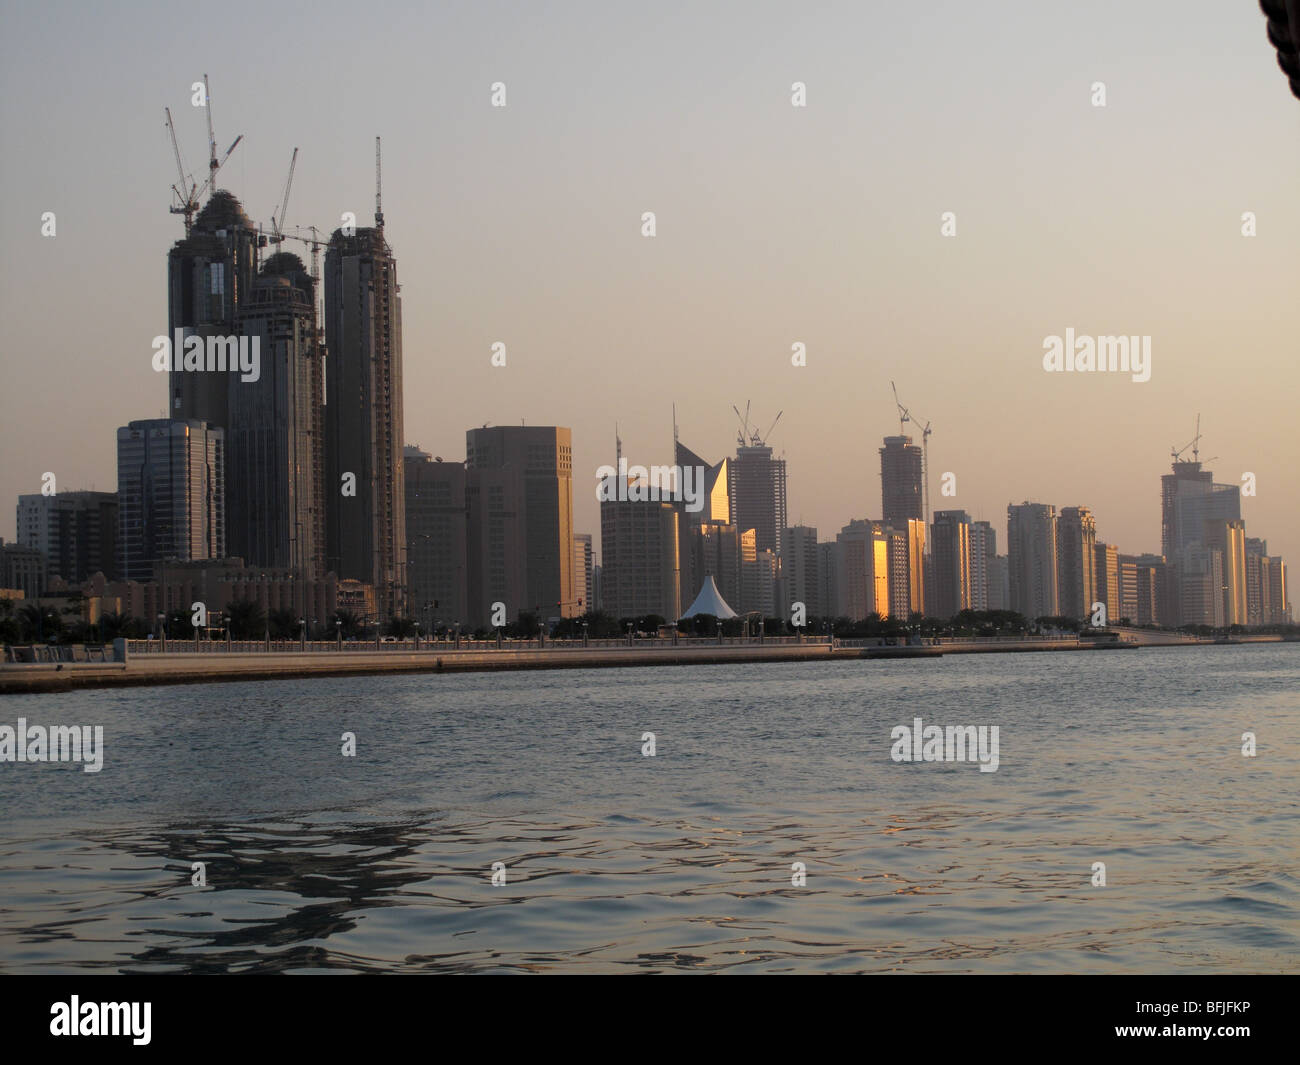 Lumière du soir et de grands bâtiments modernes en bord de mer sur la Corniche, Abu Dhabi, UAE Banque D'Images